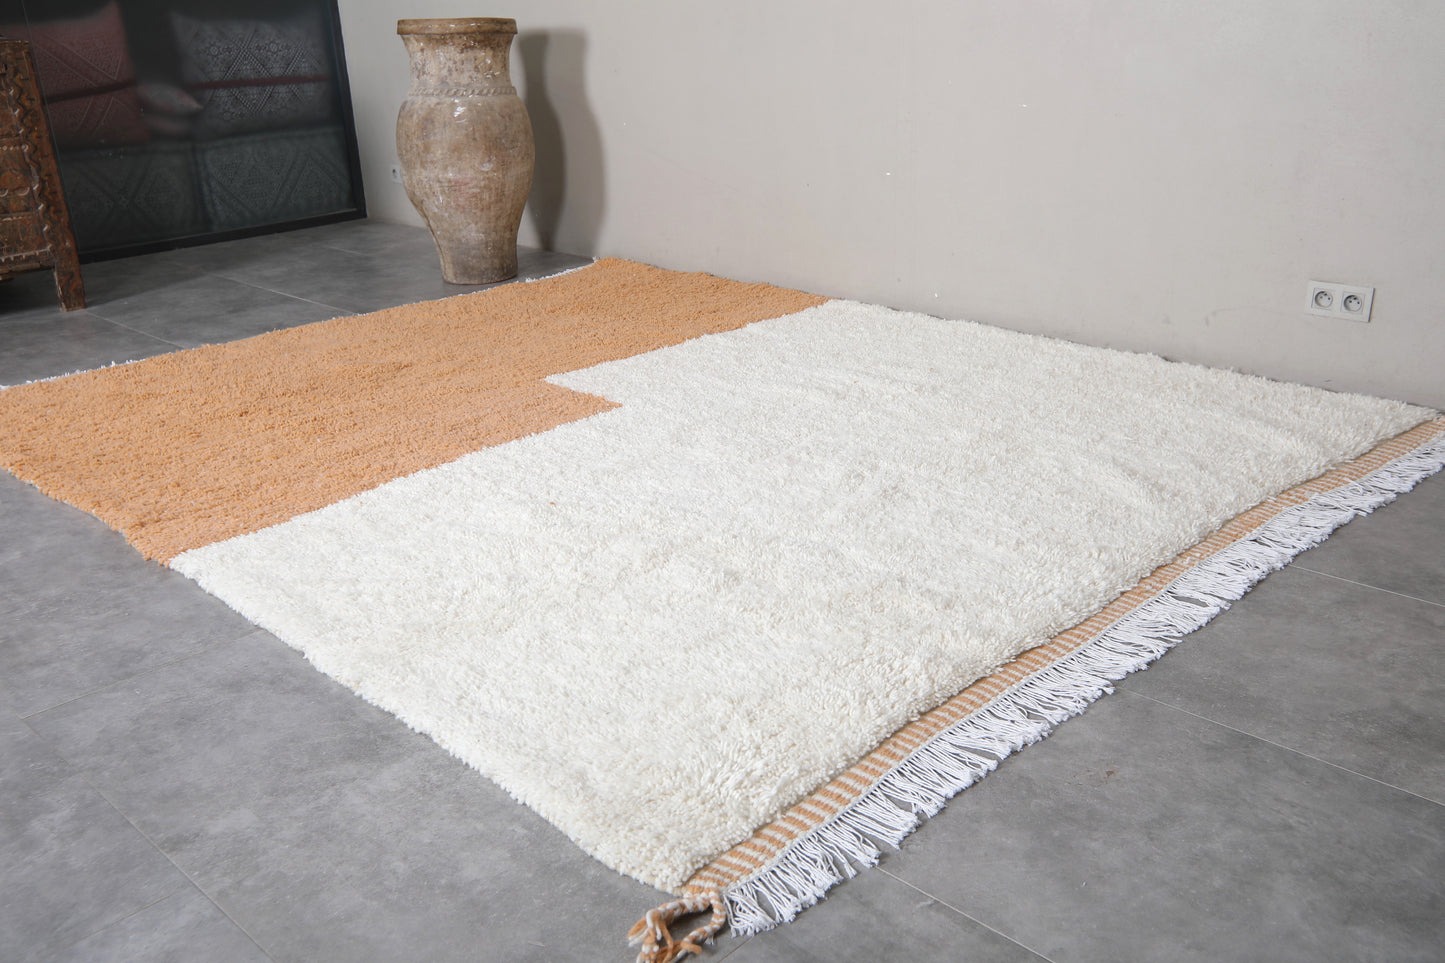 Moroccan rug 8 X 10 Feet - Beni ourain rugs